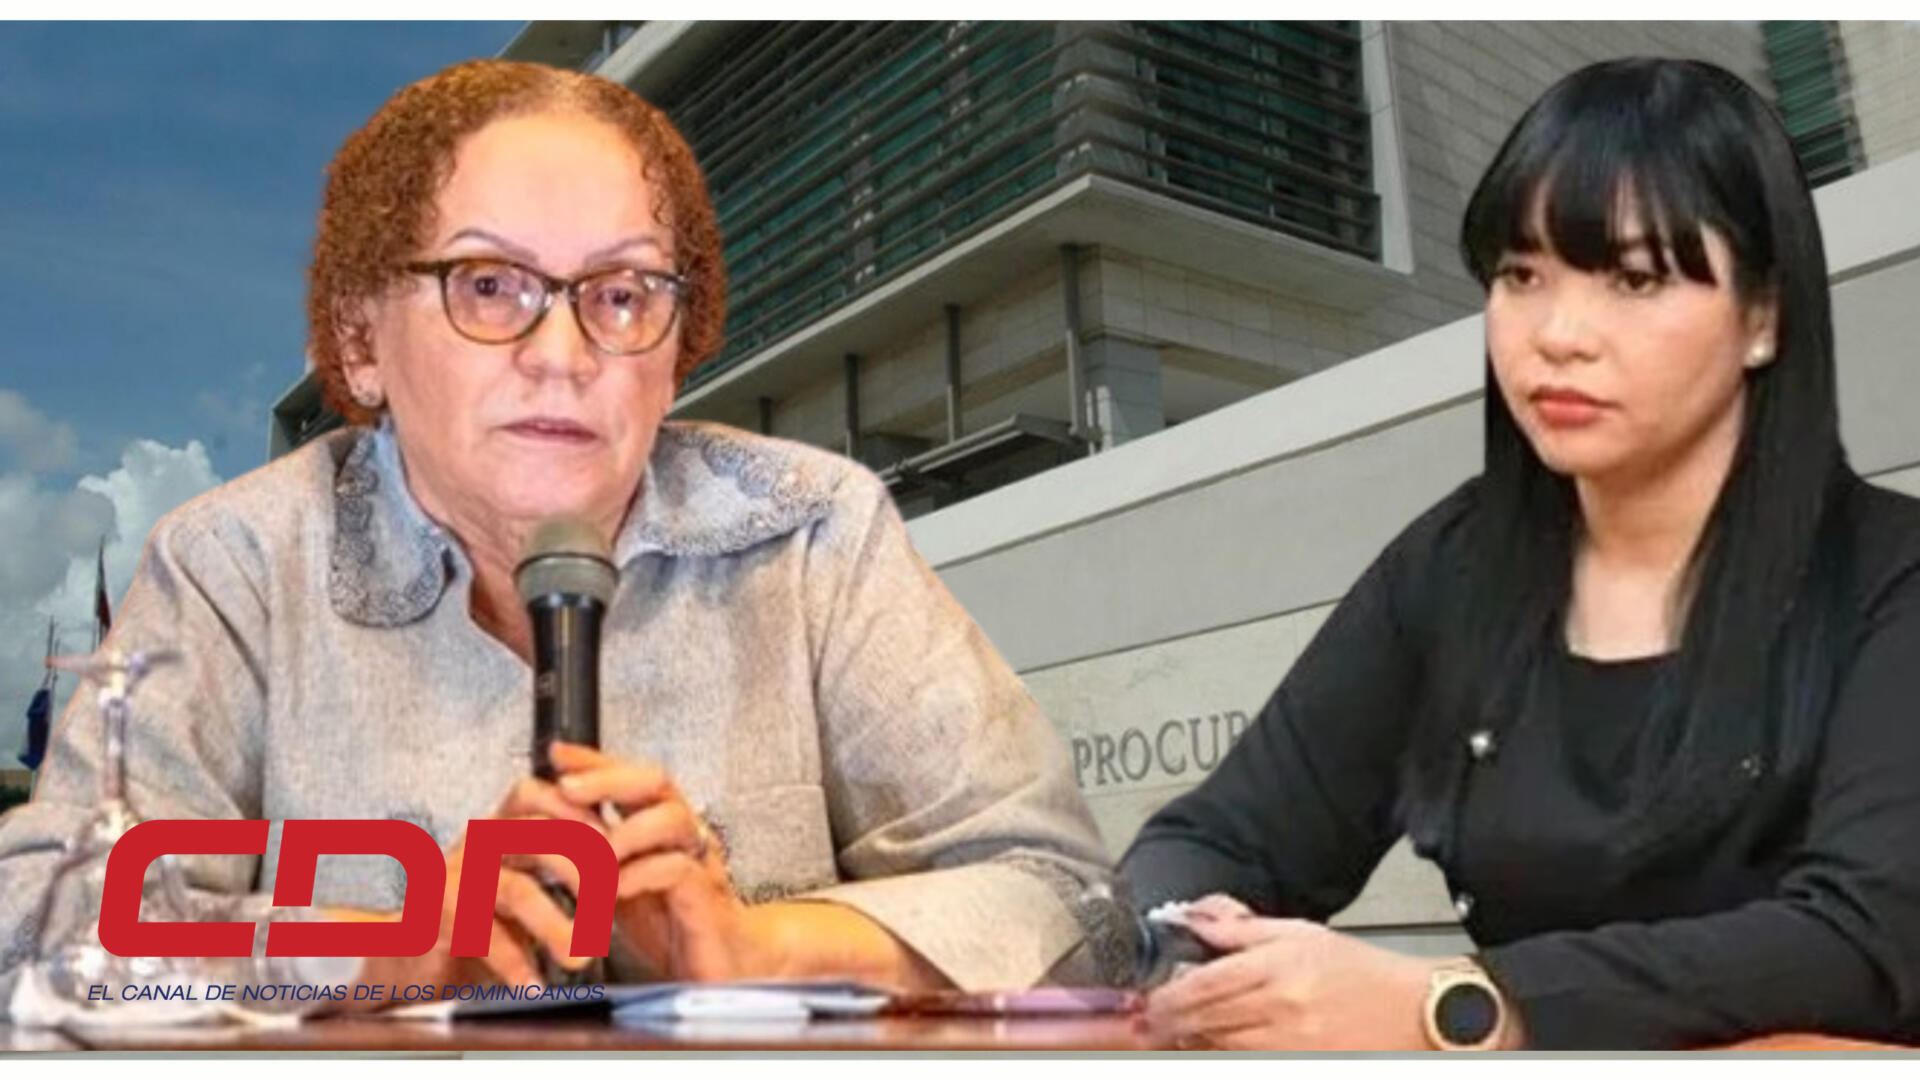 Procuradora Miriam Germán ordena investigar denuncias jueza Ana Lee Florimón